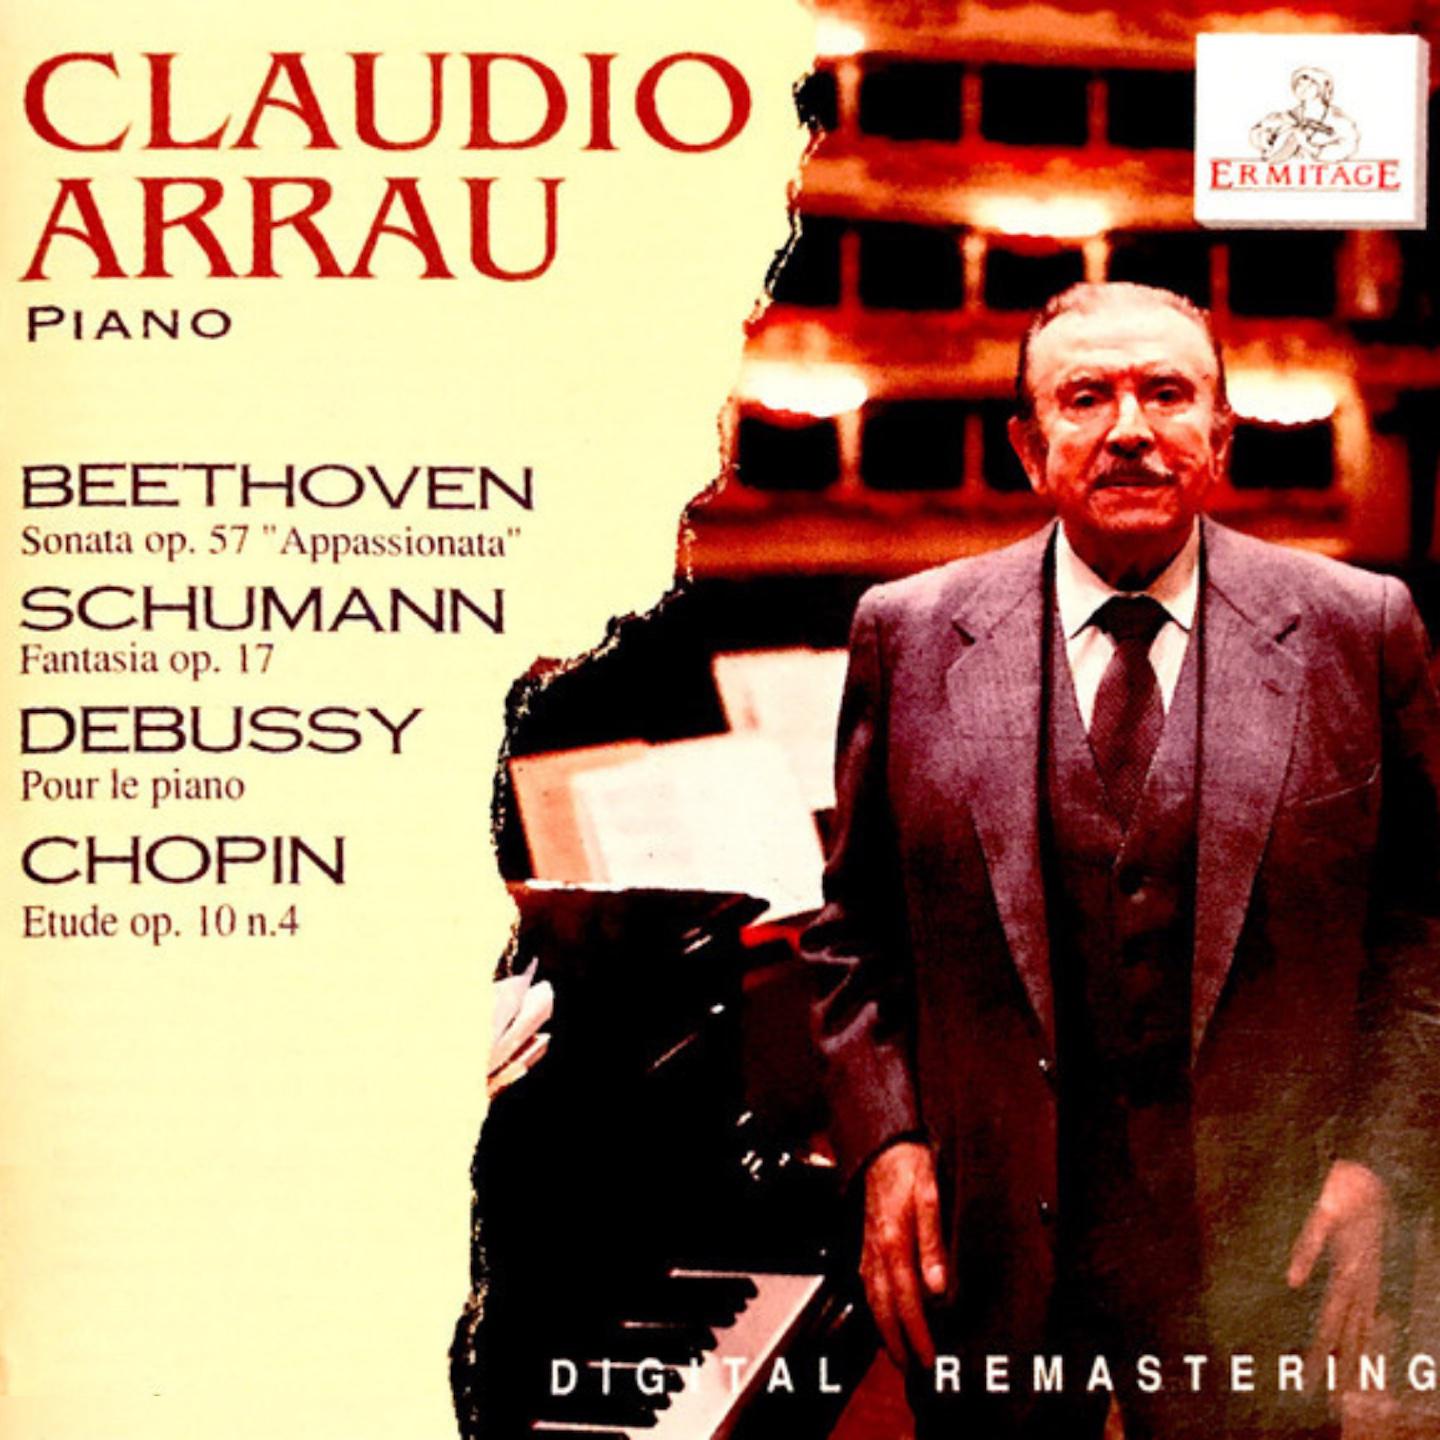 Claudio Arrau - Fantasie in C Major, Op. 17:I. Durchaus fantastisch und leidenschaftlich vorzutragen - Im Legenden-Ton